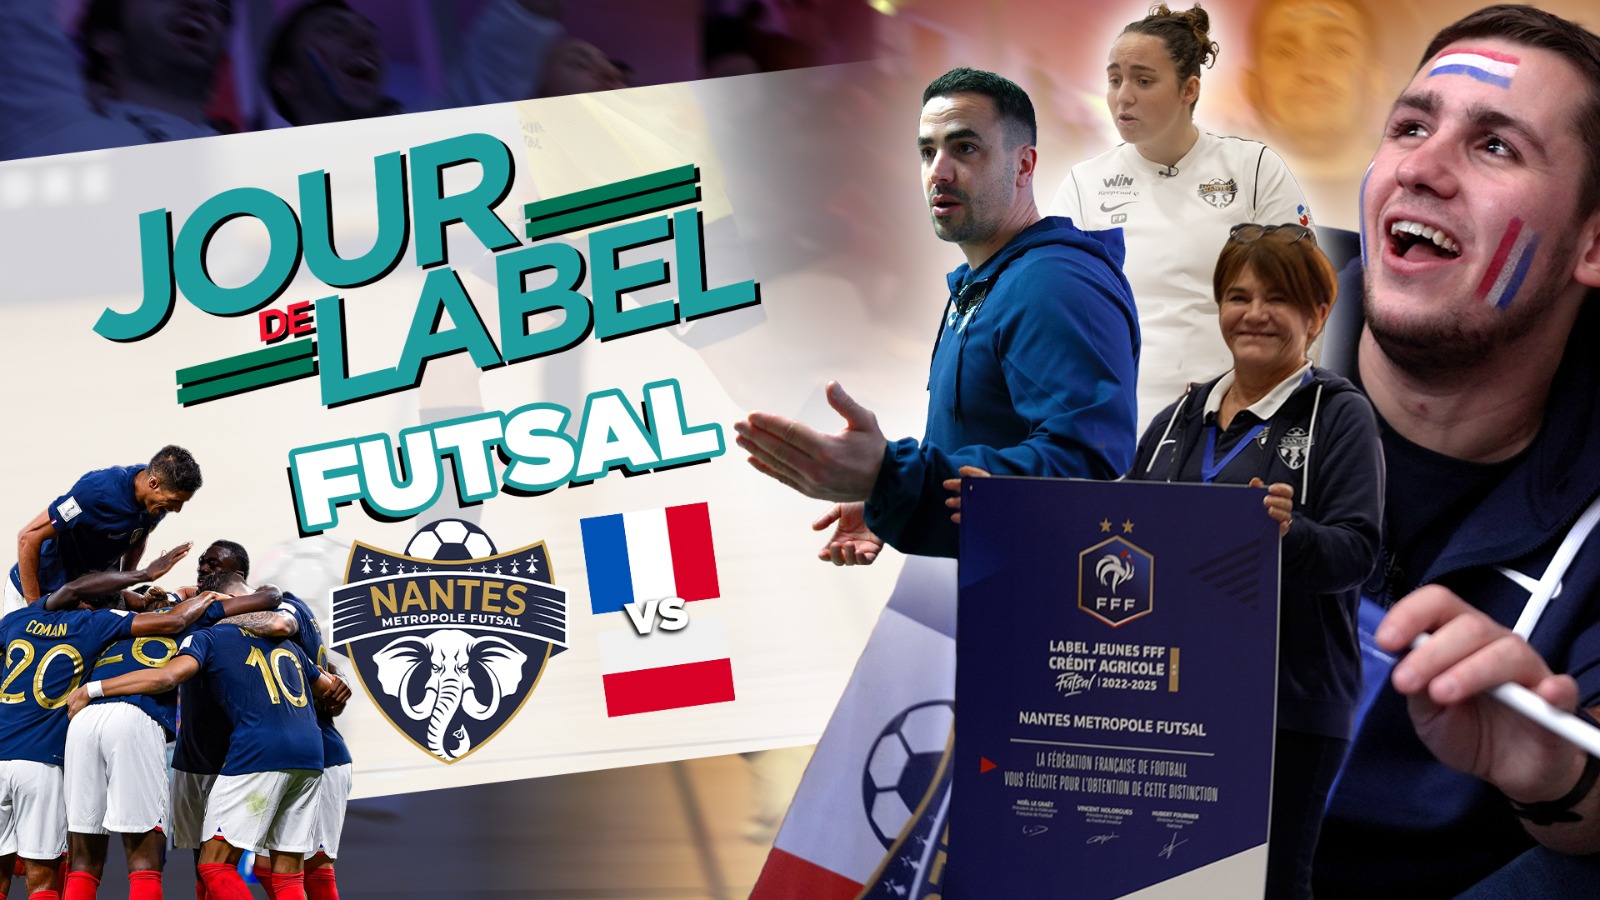 Aperçu Dimanche 4 décembre, au Nantes Métropole Futsal, c'était Jour de Label et Jour de match de l'Equipe de France!